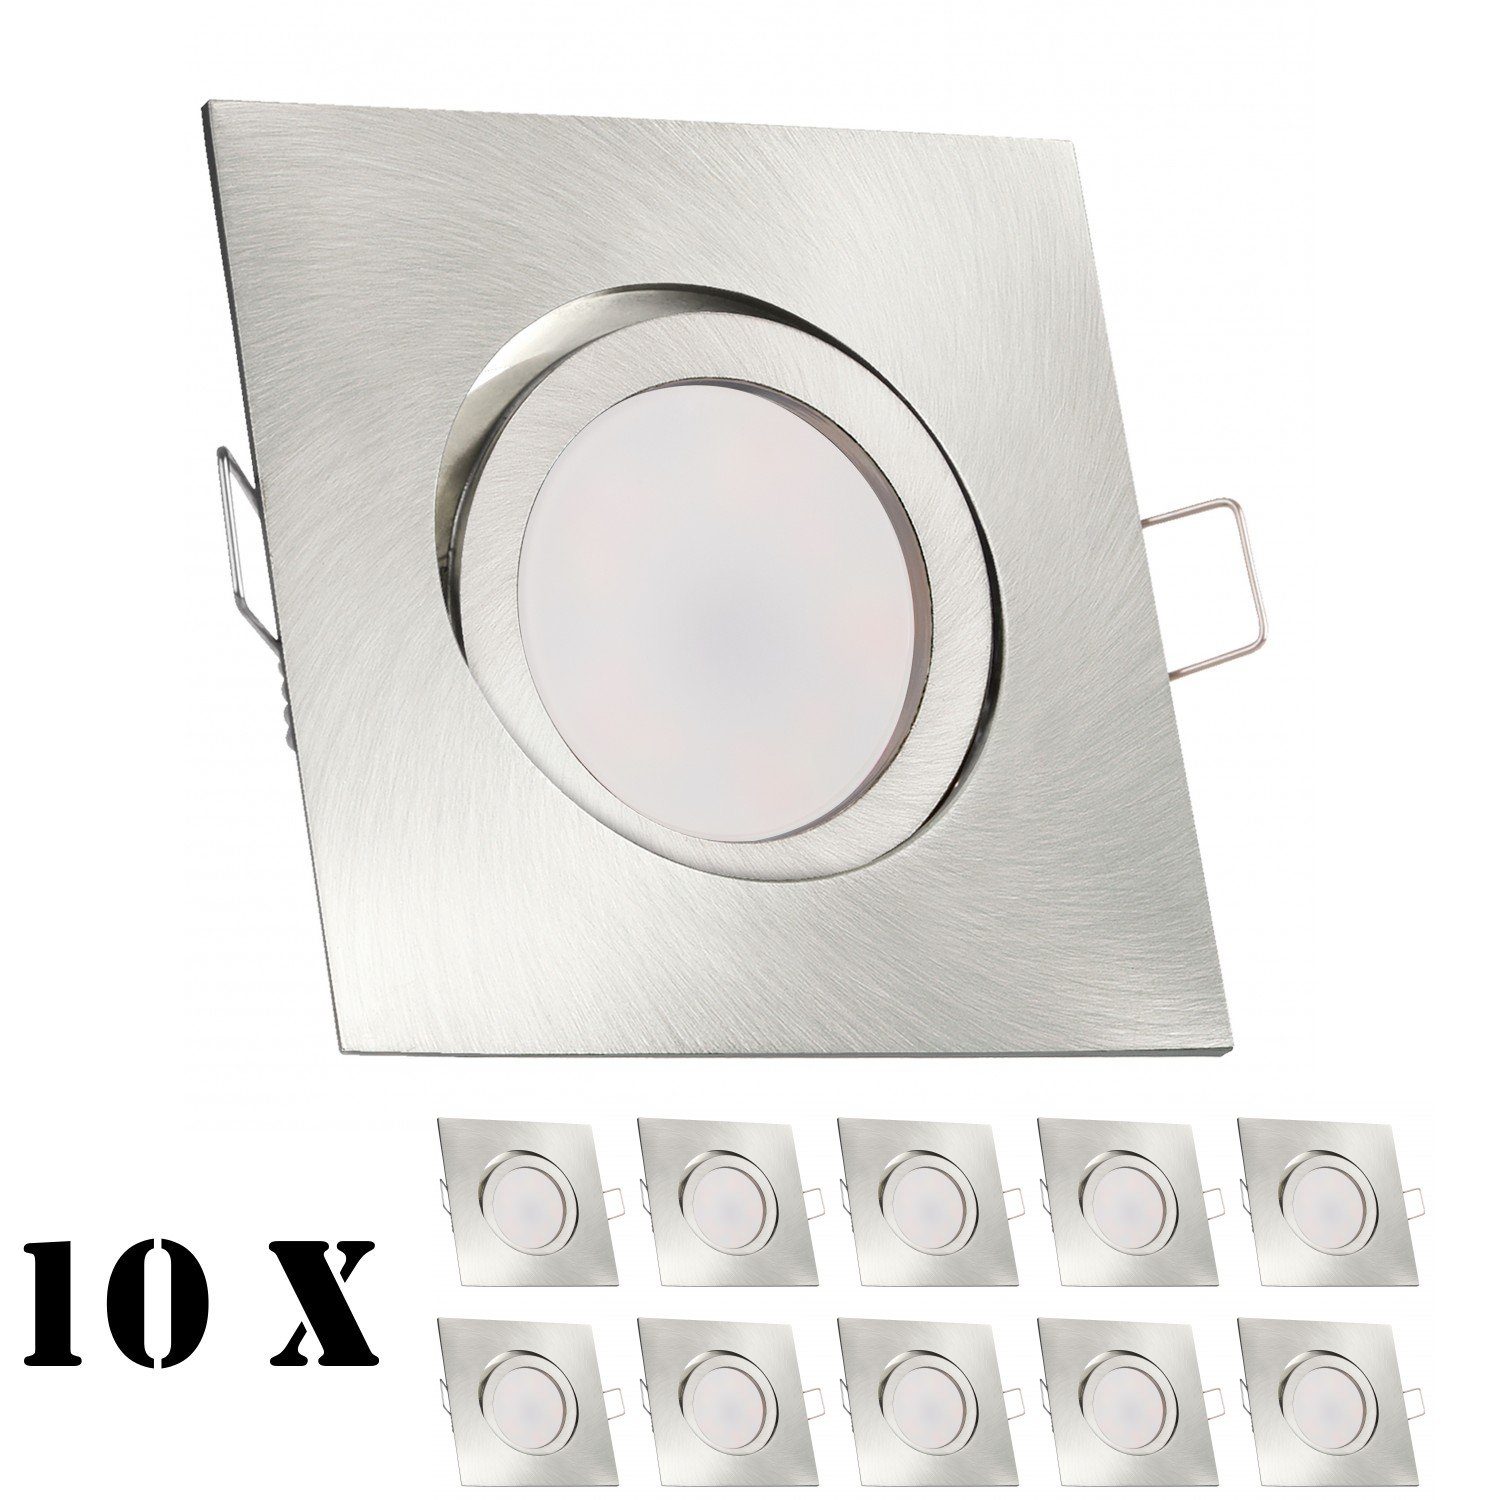 LEDANDO LED Einbaustrahler 10er LED Einbaustrahler Set extra flach in edelstahl / silber gebürste